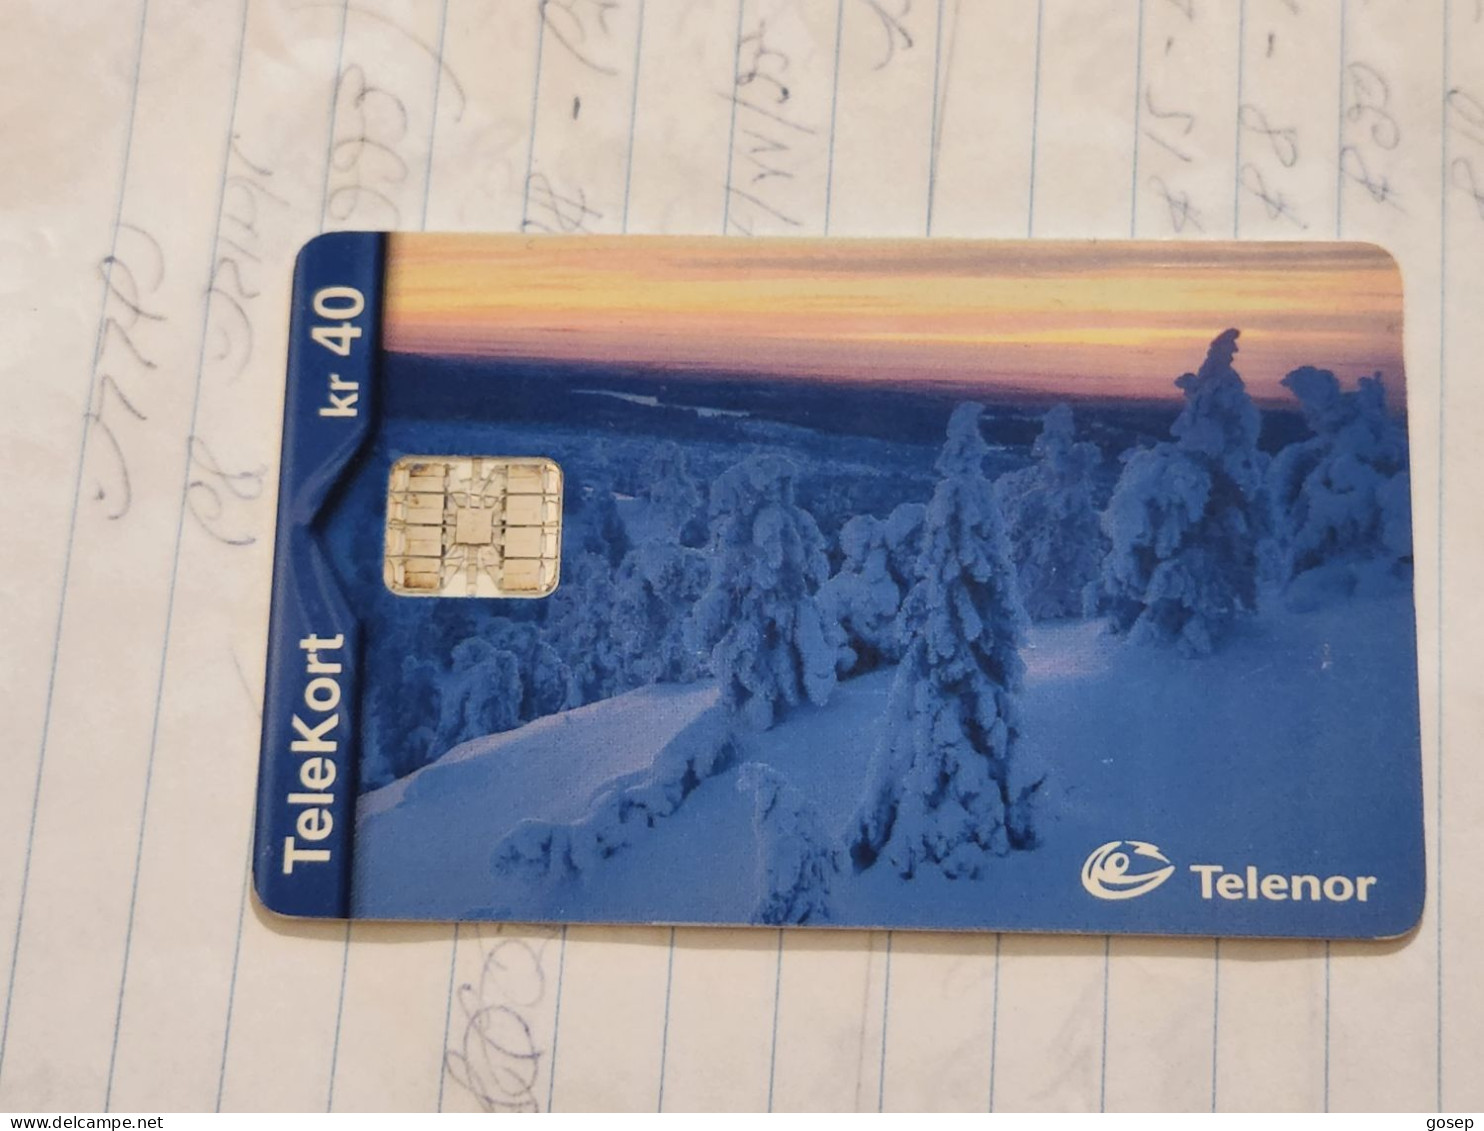 Norway-(N-156)-Vinterkveld-(KR 40)-(73)-(C9A035400)-used Card+1card Prepiad Free - Norway